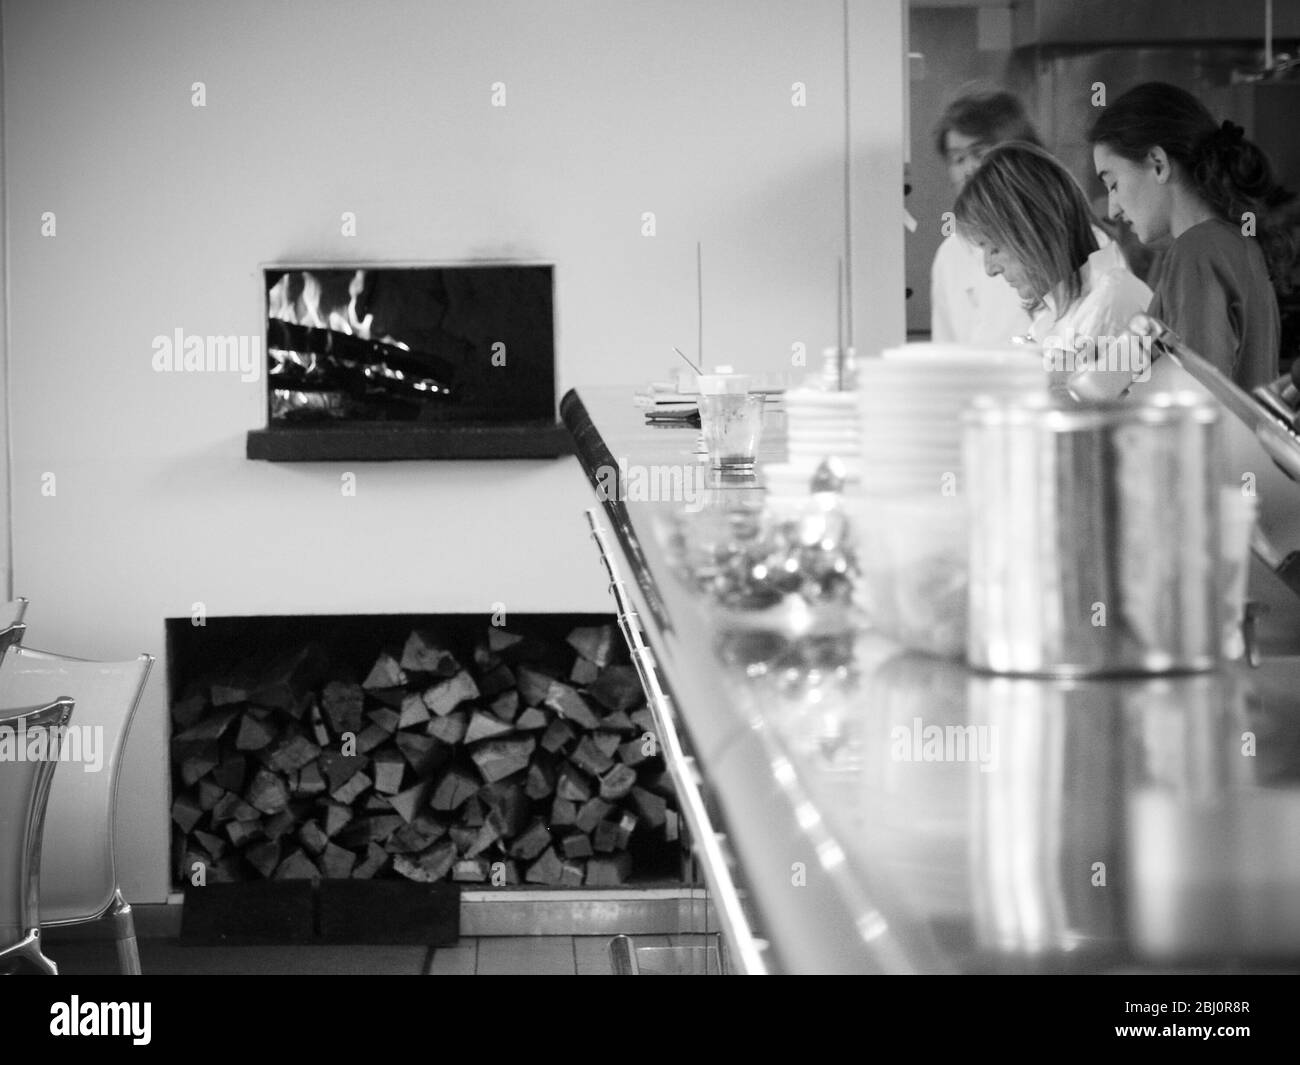 Ruth Rogers und Mitarbeiter des River Cafe Restaurants in London, die Holzfeuer, Holzladen und Edelstahltheke mit gestapeltem Geschirr zeigen - Stockfoto